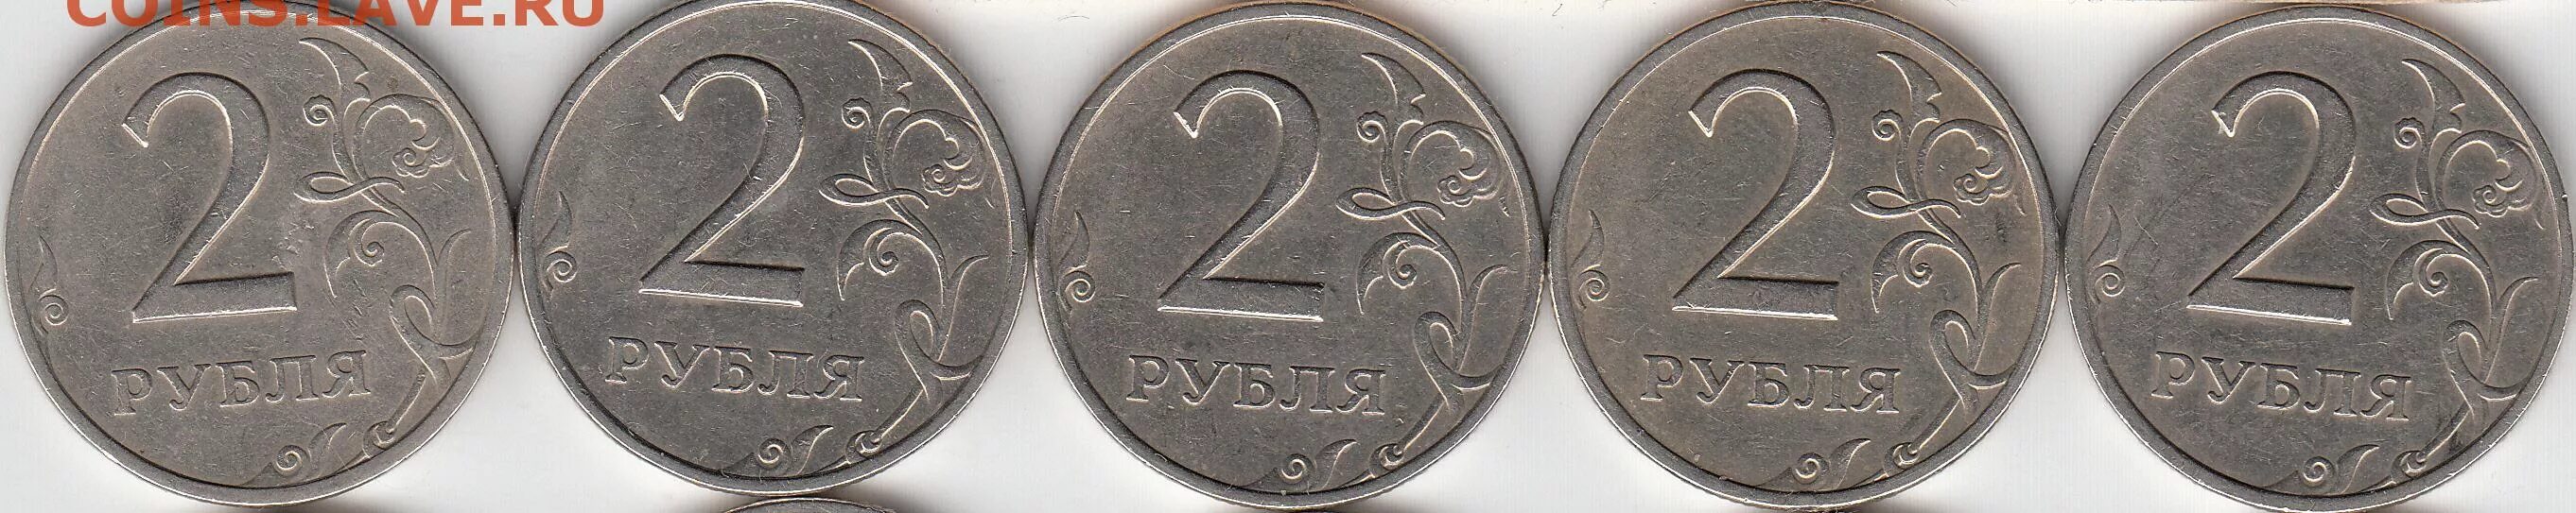 5 76 10. Пять рублей Мем. Держи два рубля. Две монеты 1999 г. картинки.